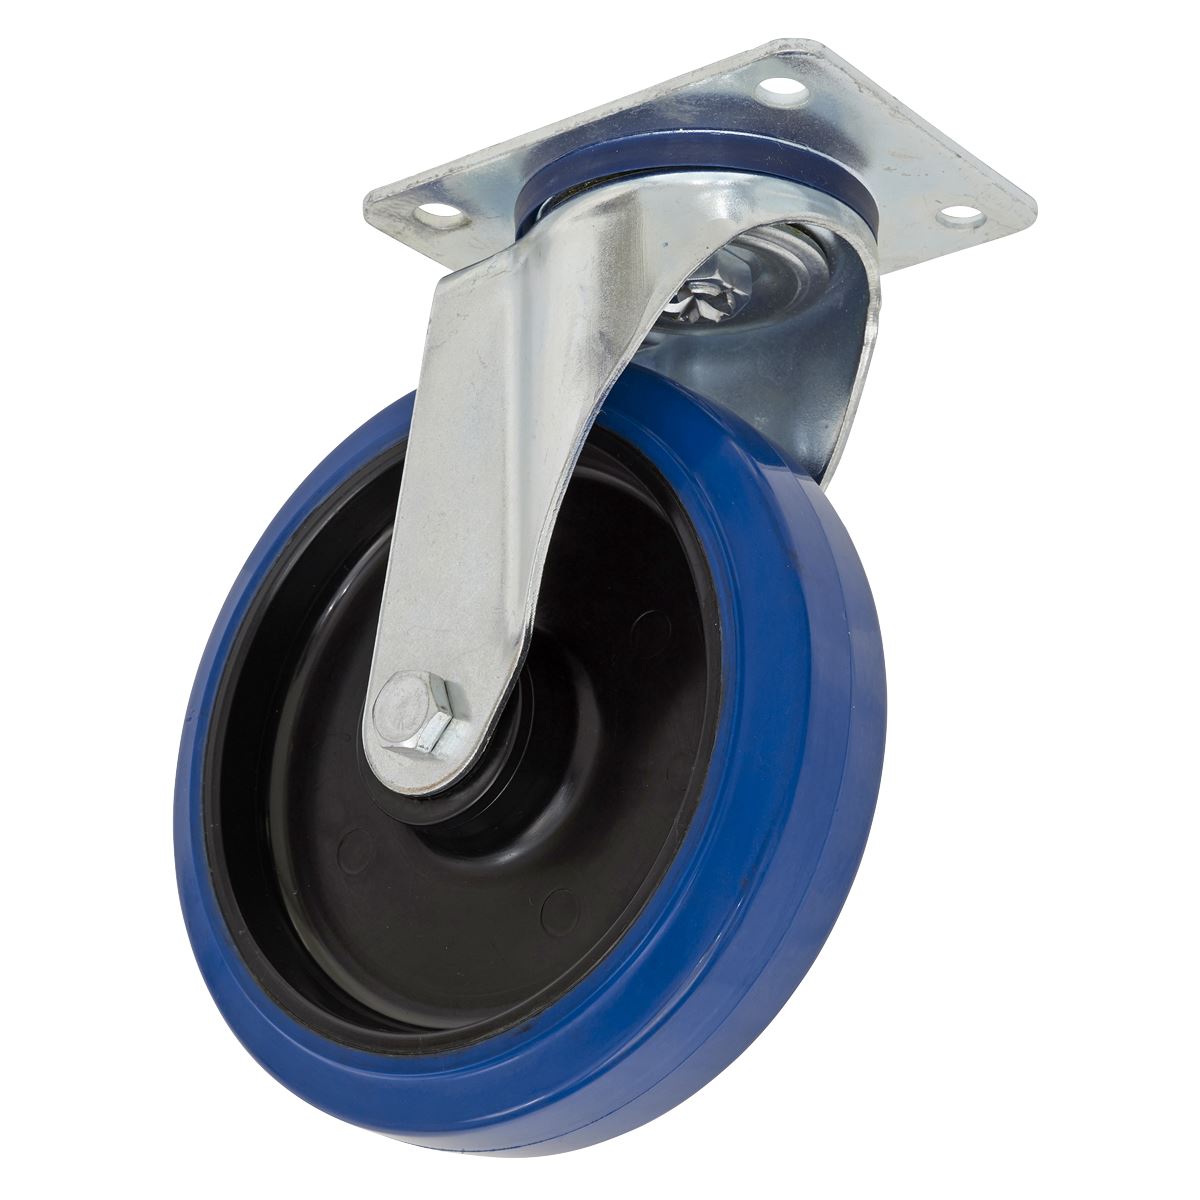 Sealey Heavy-Duty Blue Elastic Rubber Swivel Castor Wheel Ø200mm - Trade